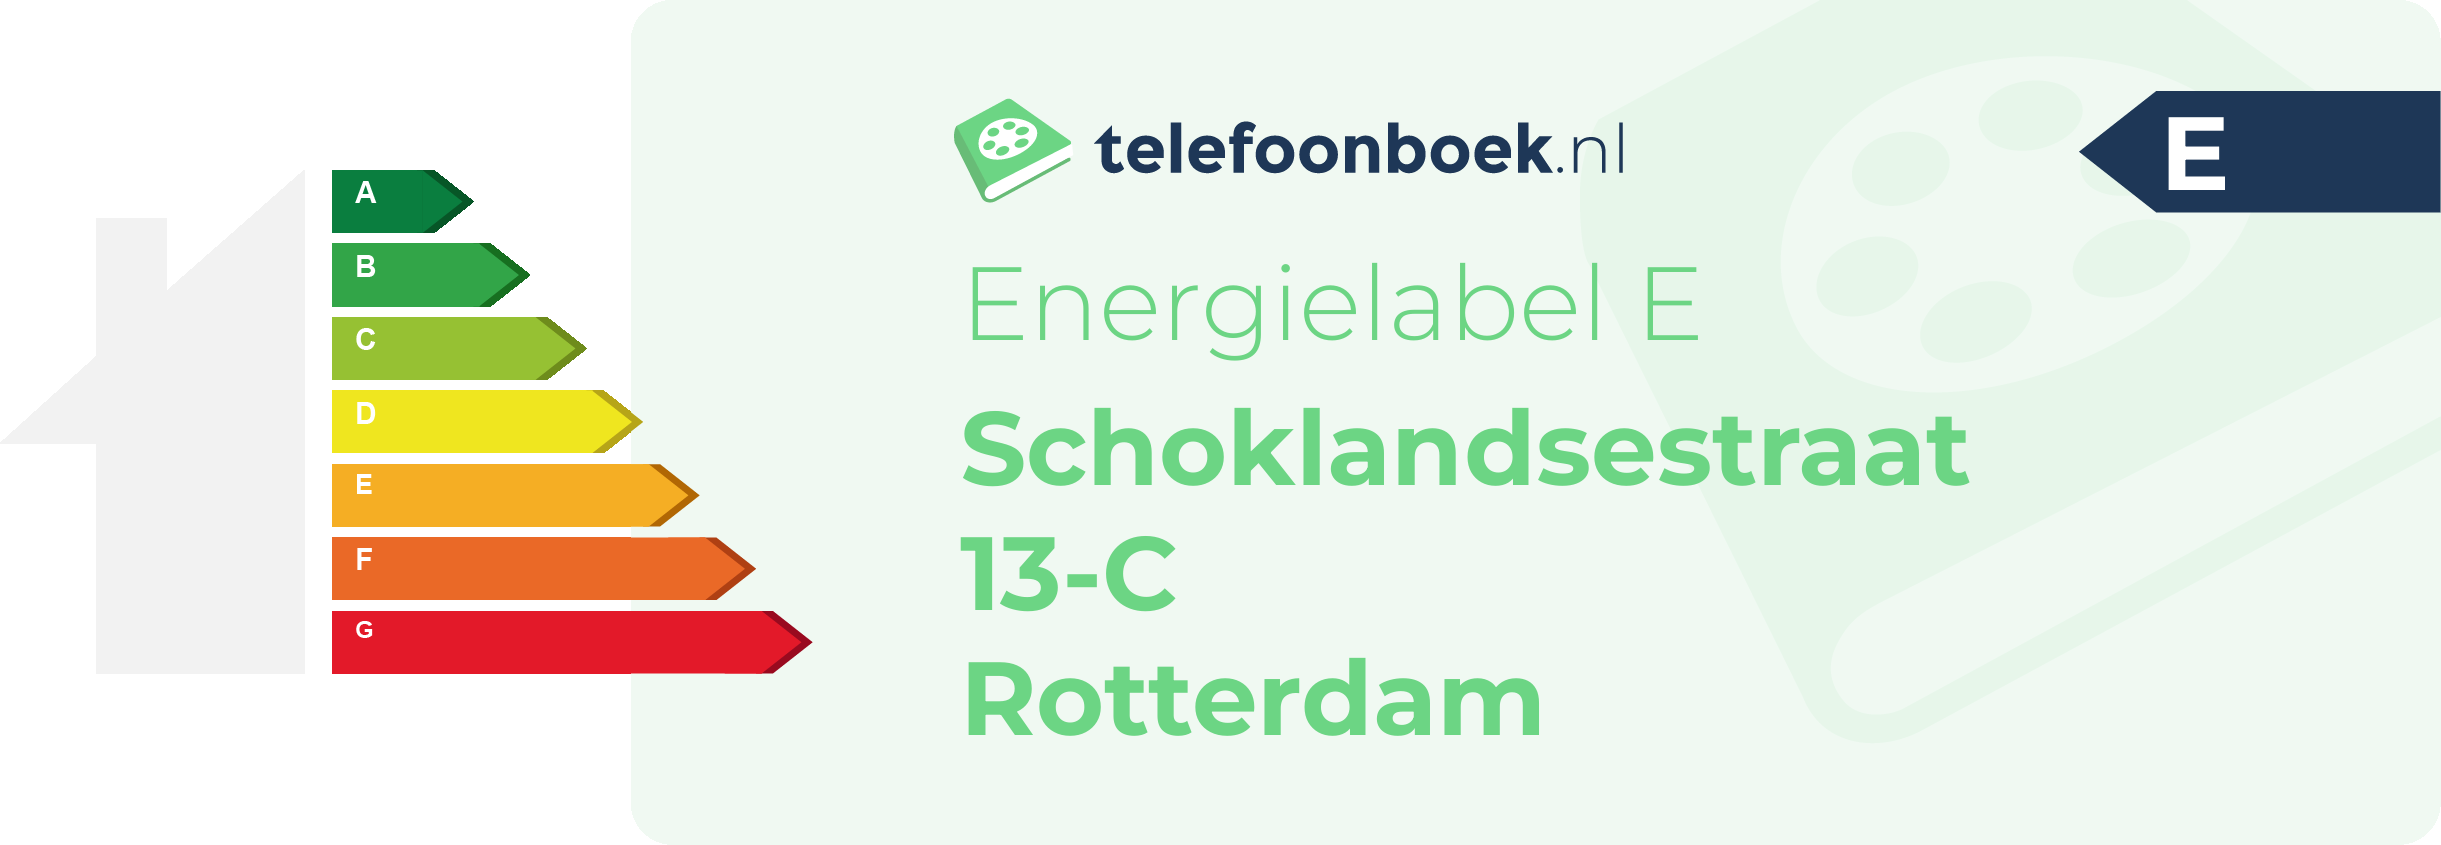 Energielabel Schoklandsestraat 13-C Rotterdam